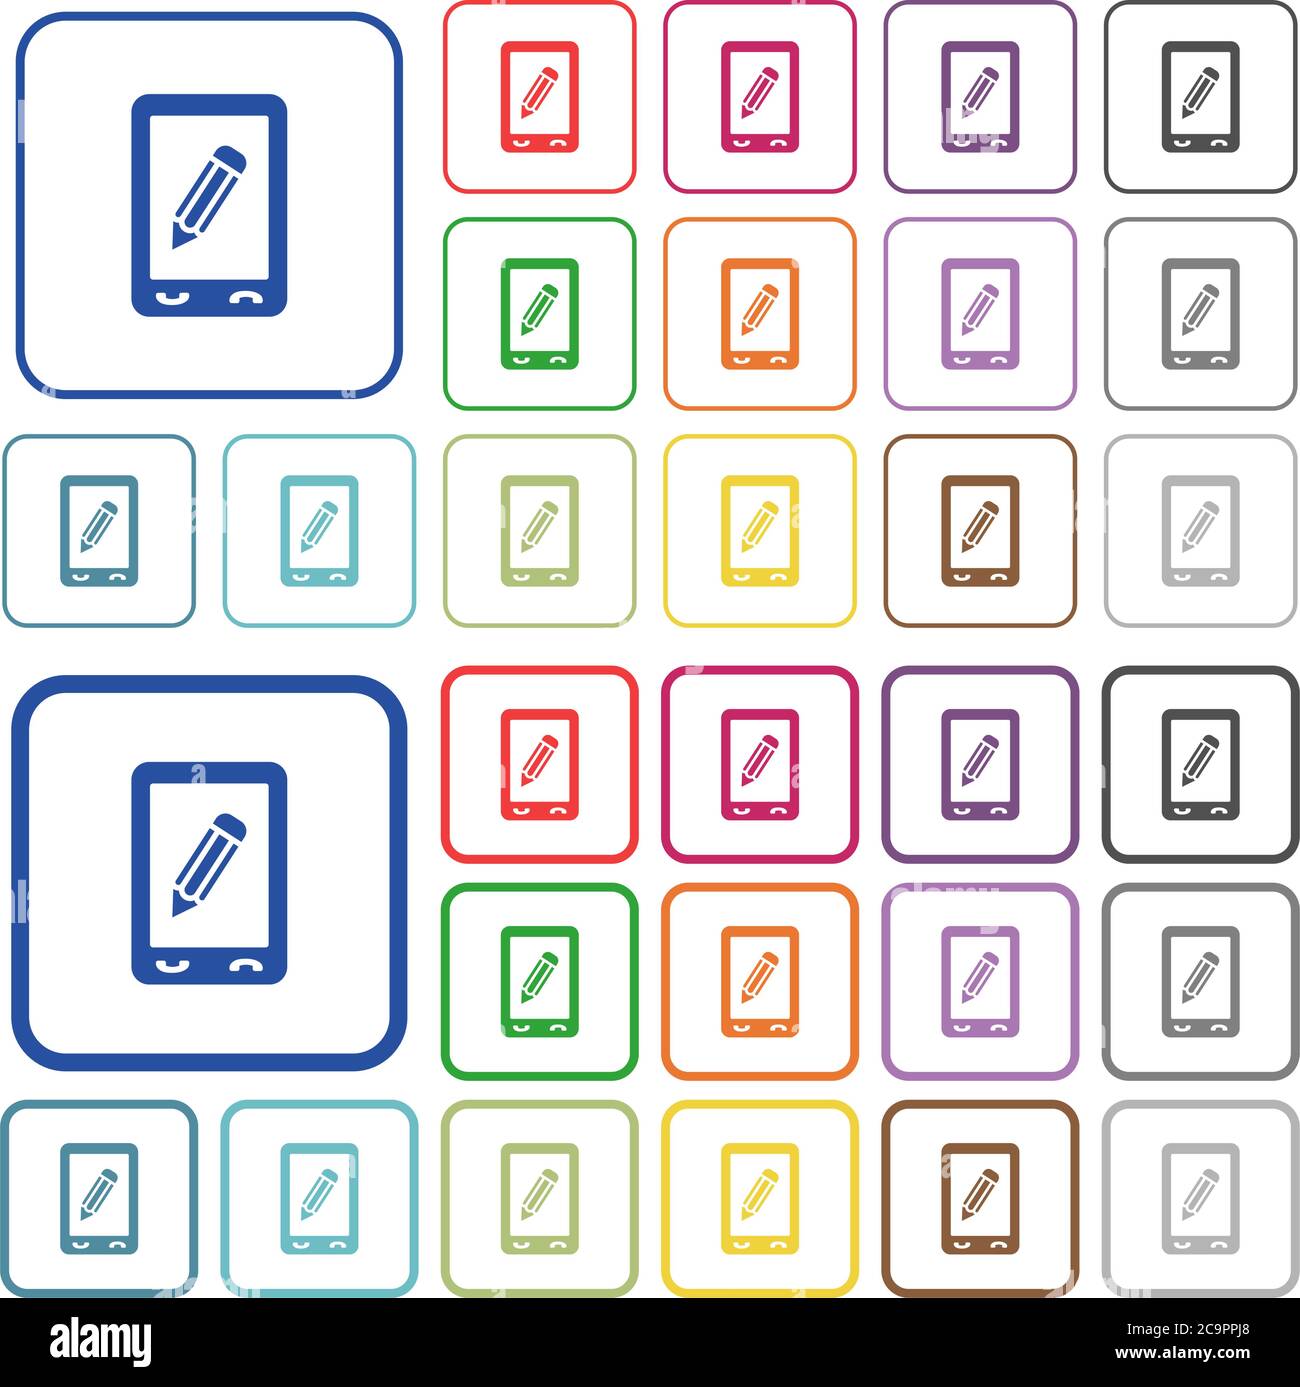 Icone piatte a colori per memo mobili in cornici quadrate arrotondate. Versioni sottili e spesse incluse. Illustrazione Vettoriale